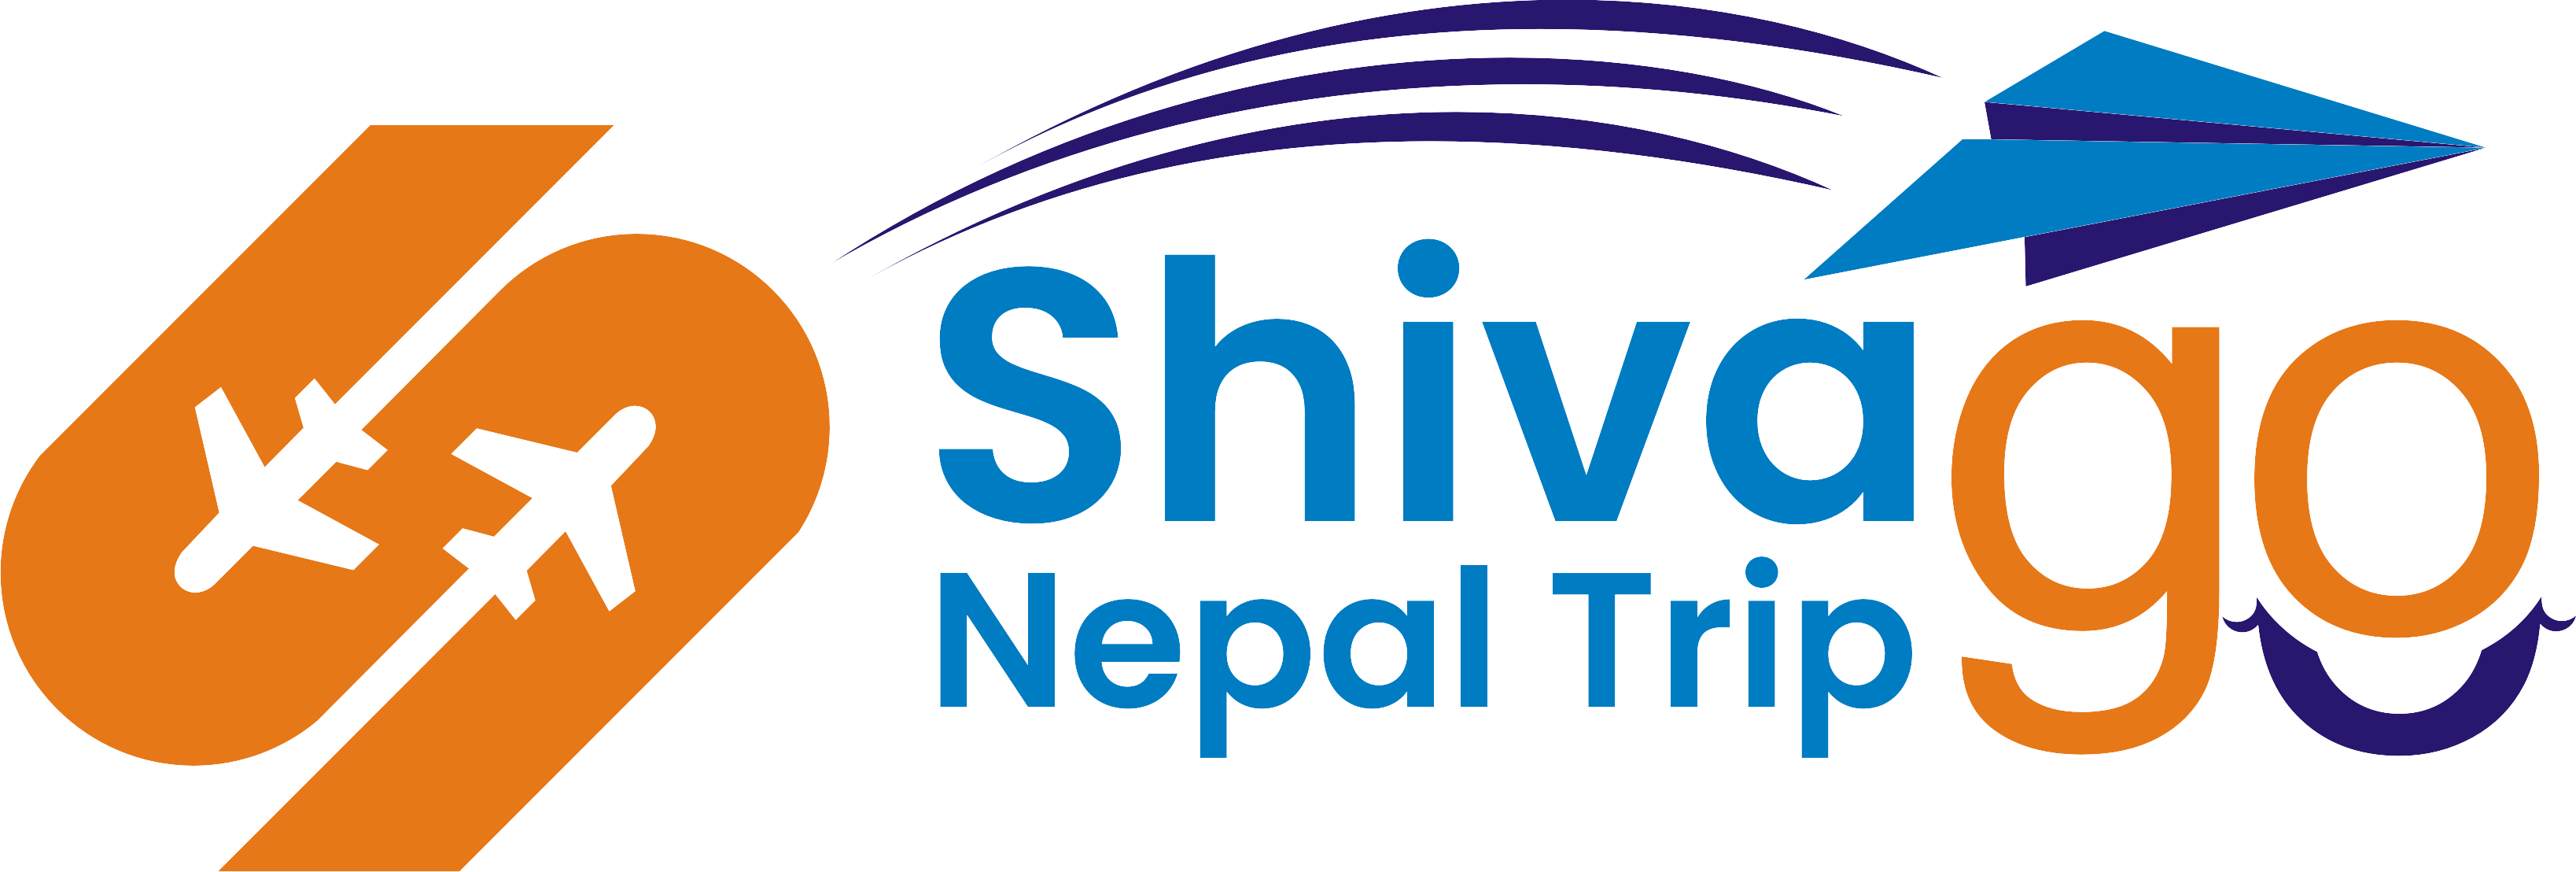 Shivago Nepal Trip